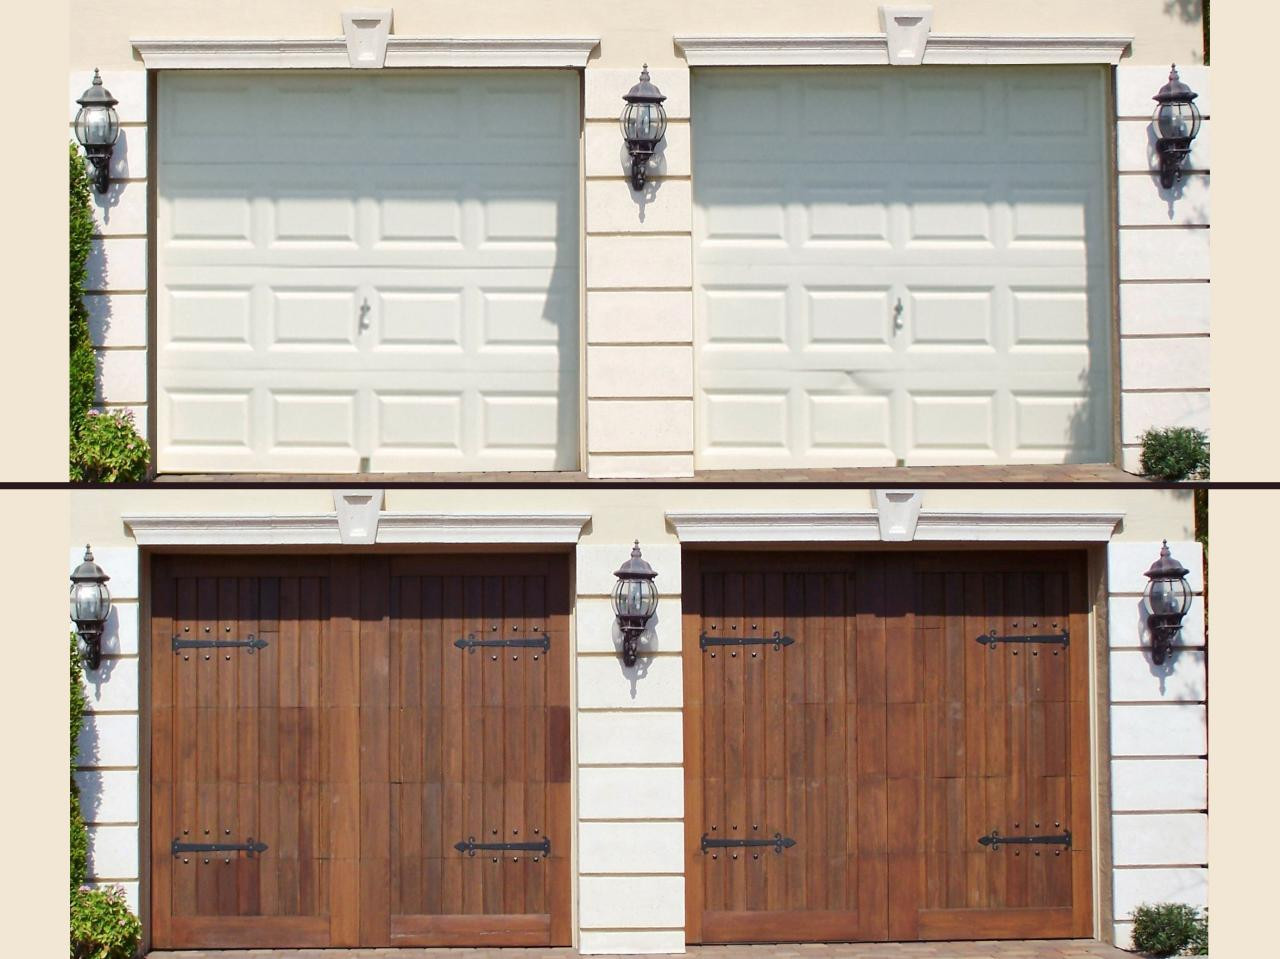 Best ideas about DIY Garage Door Repairs
. Save or Pin Do It Yourself Garage Door Repair Dap fice Now.